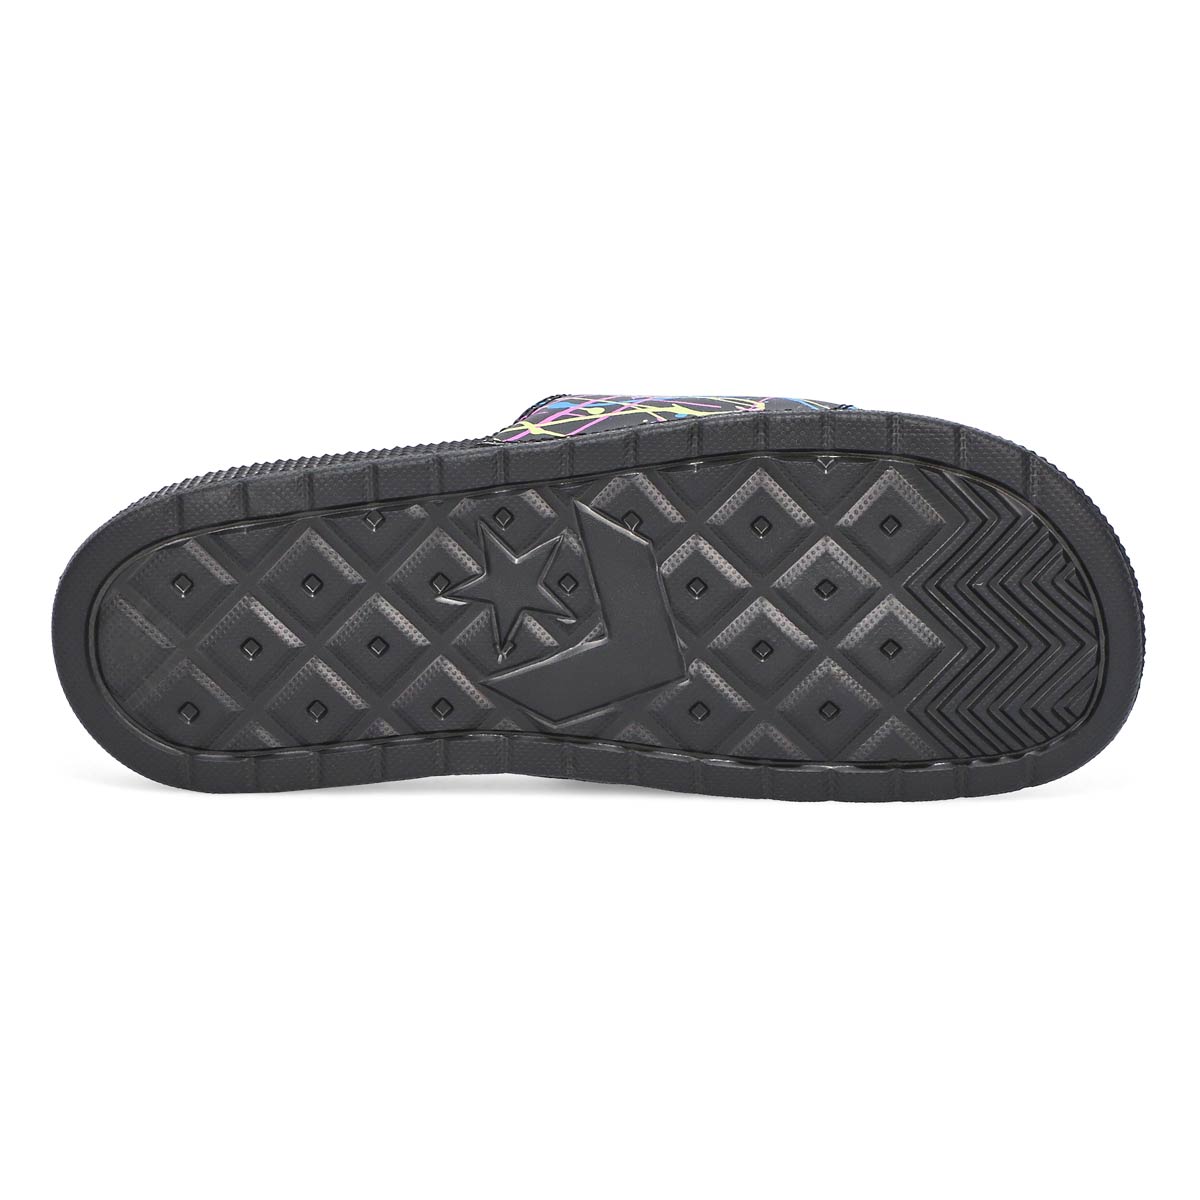 Women's All Star Splatter Slide Sandal-Black/Multi